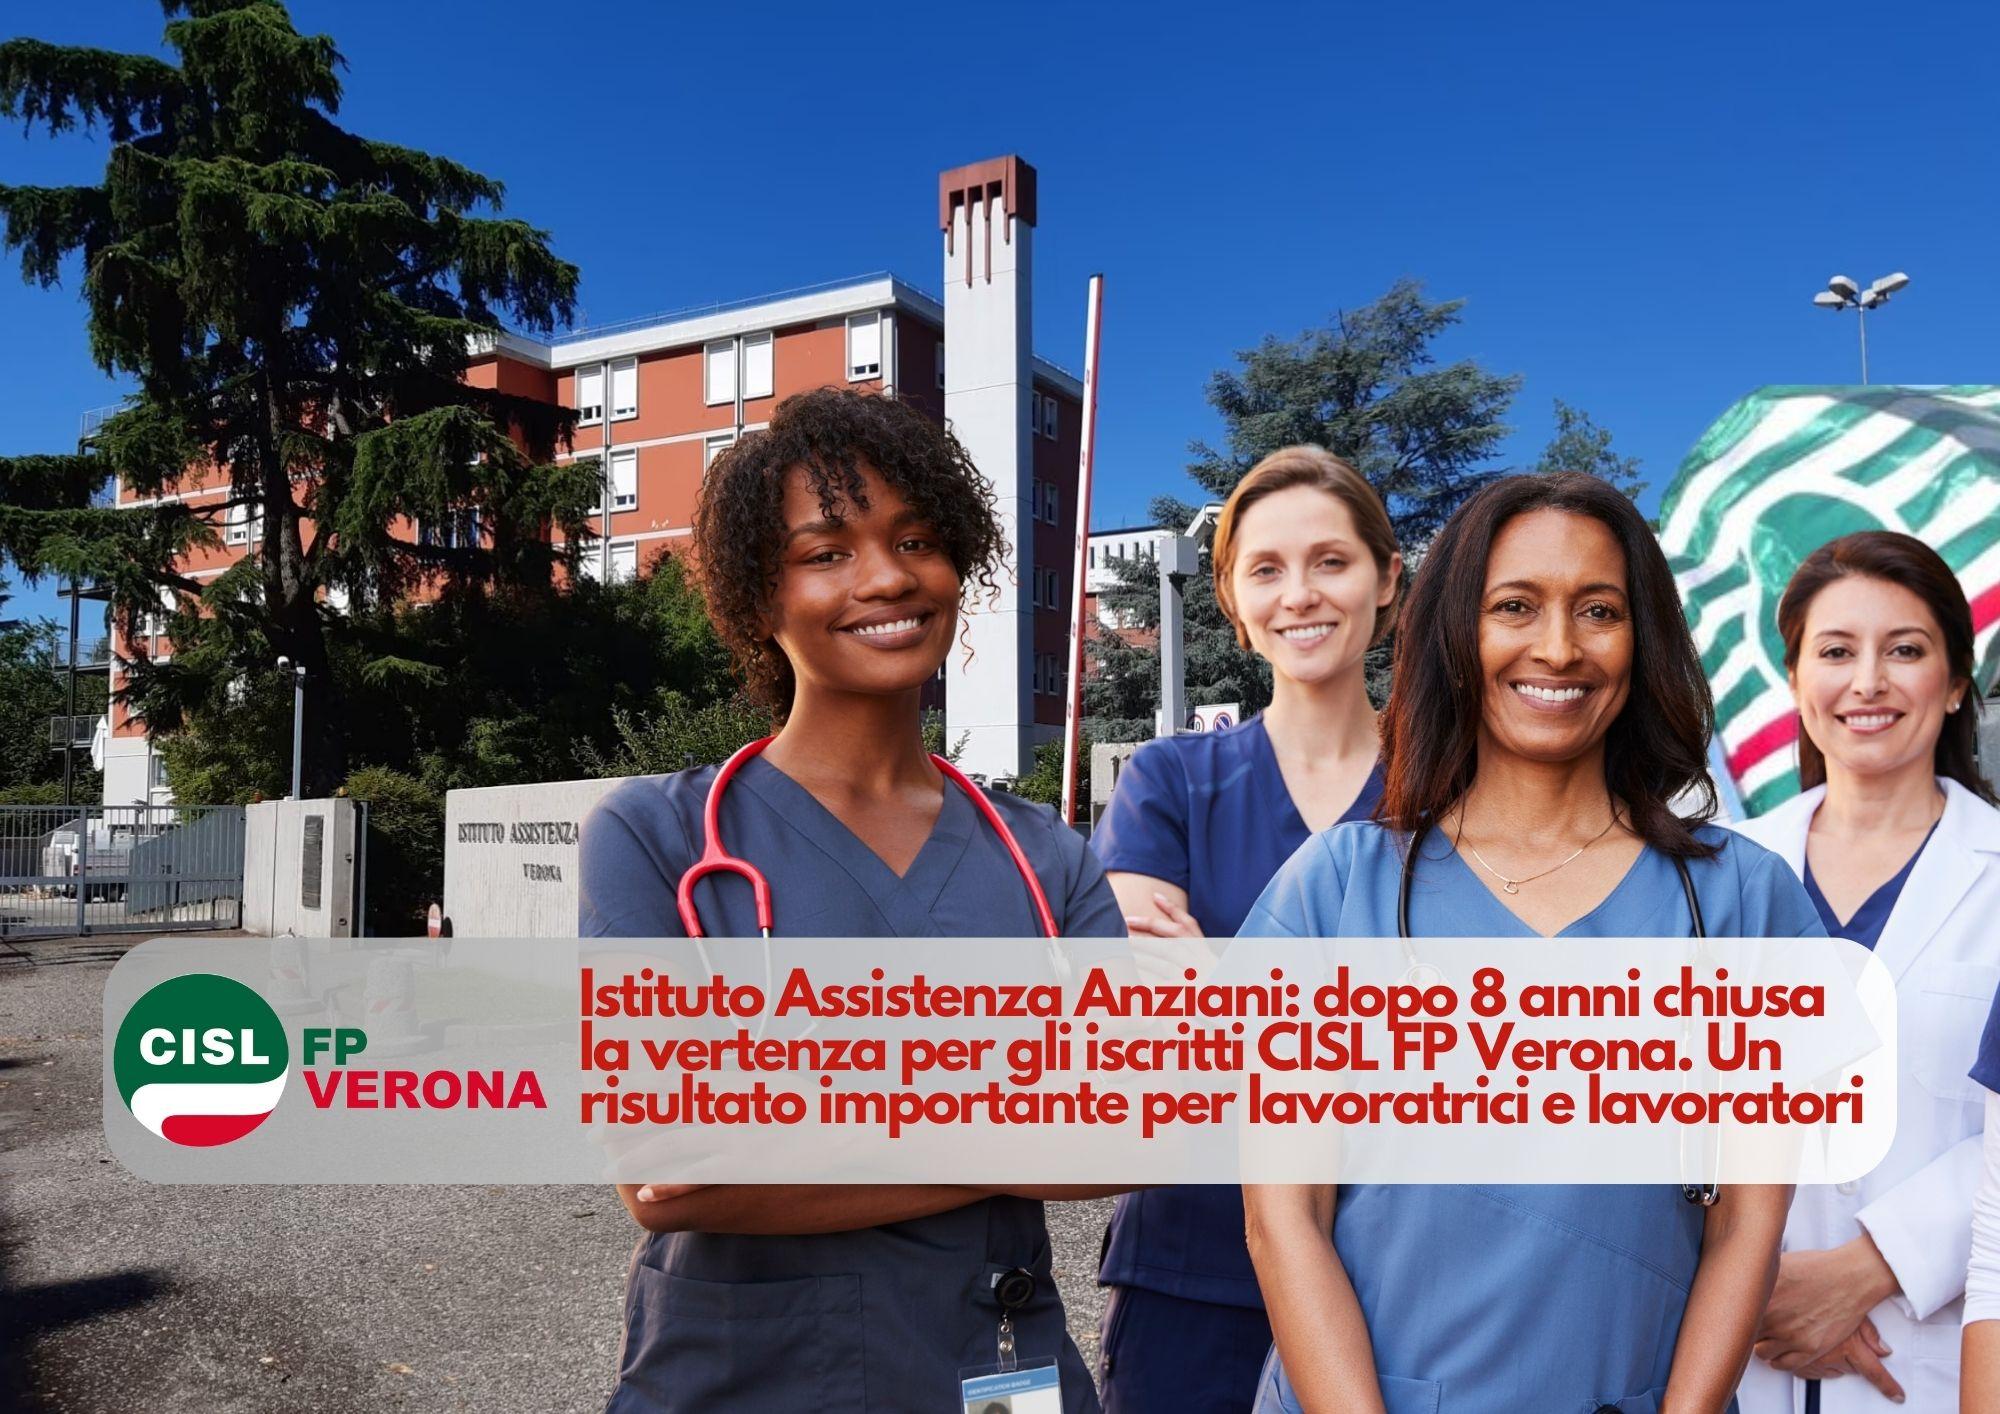 CISL FP Verona. Istituto Assistenza Anziani: dopo 8 anni chiusa la vertenza per gli iscritti CISL FP Verona